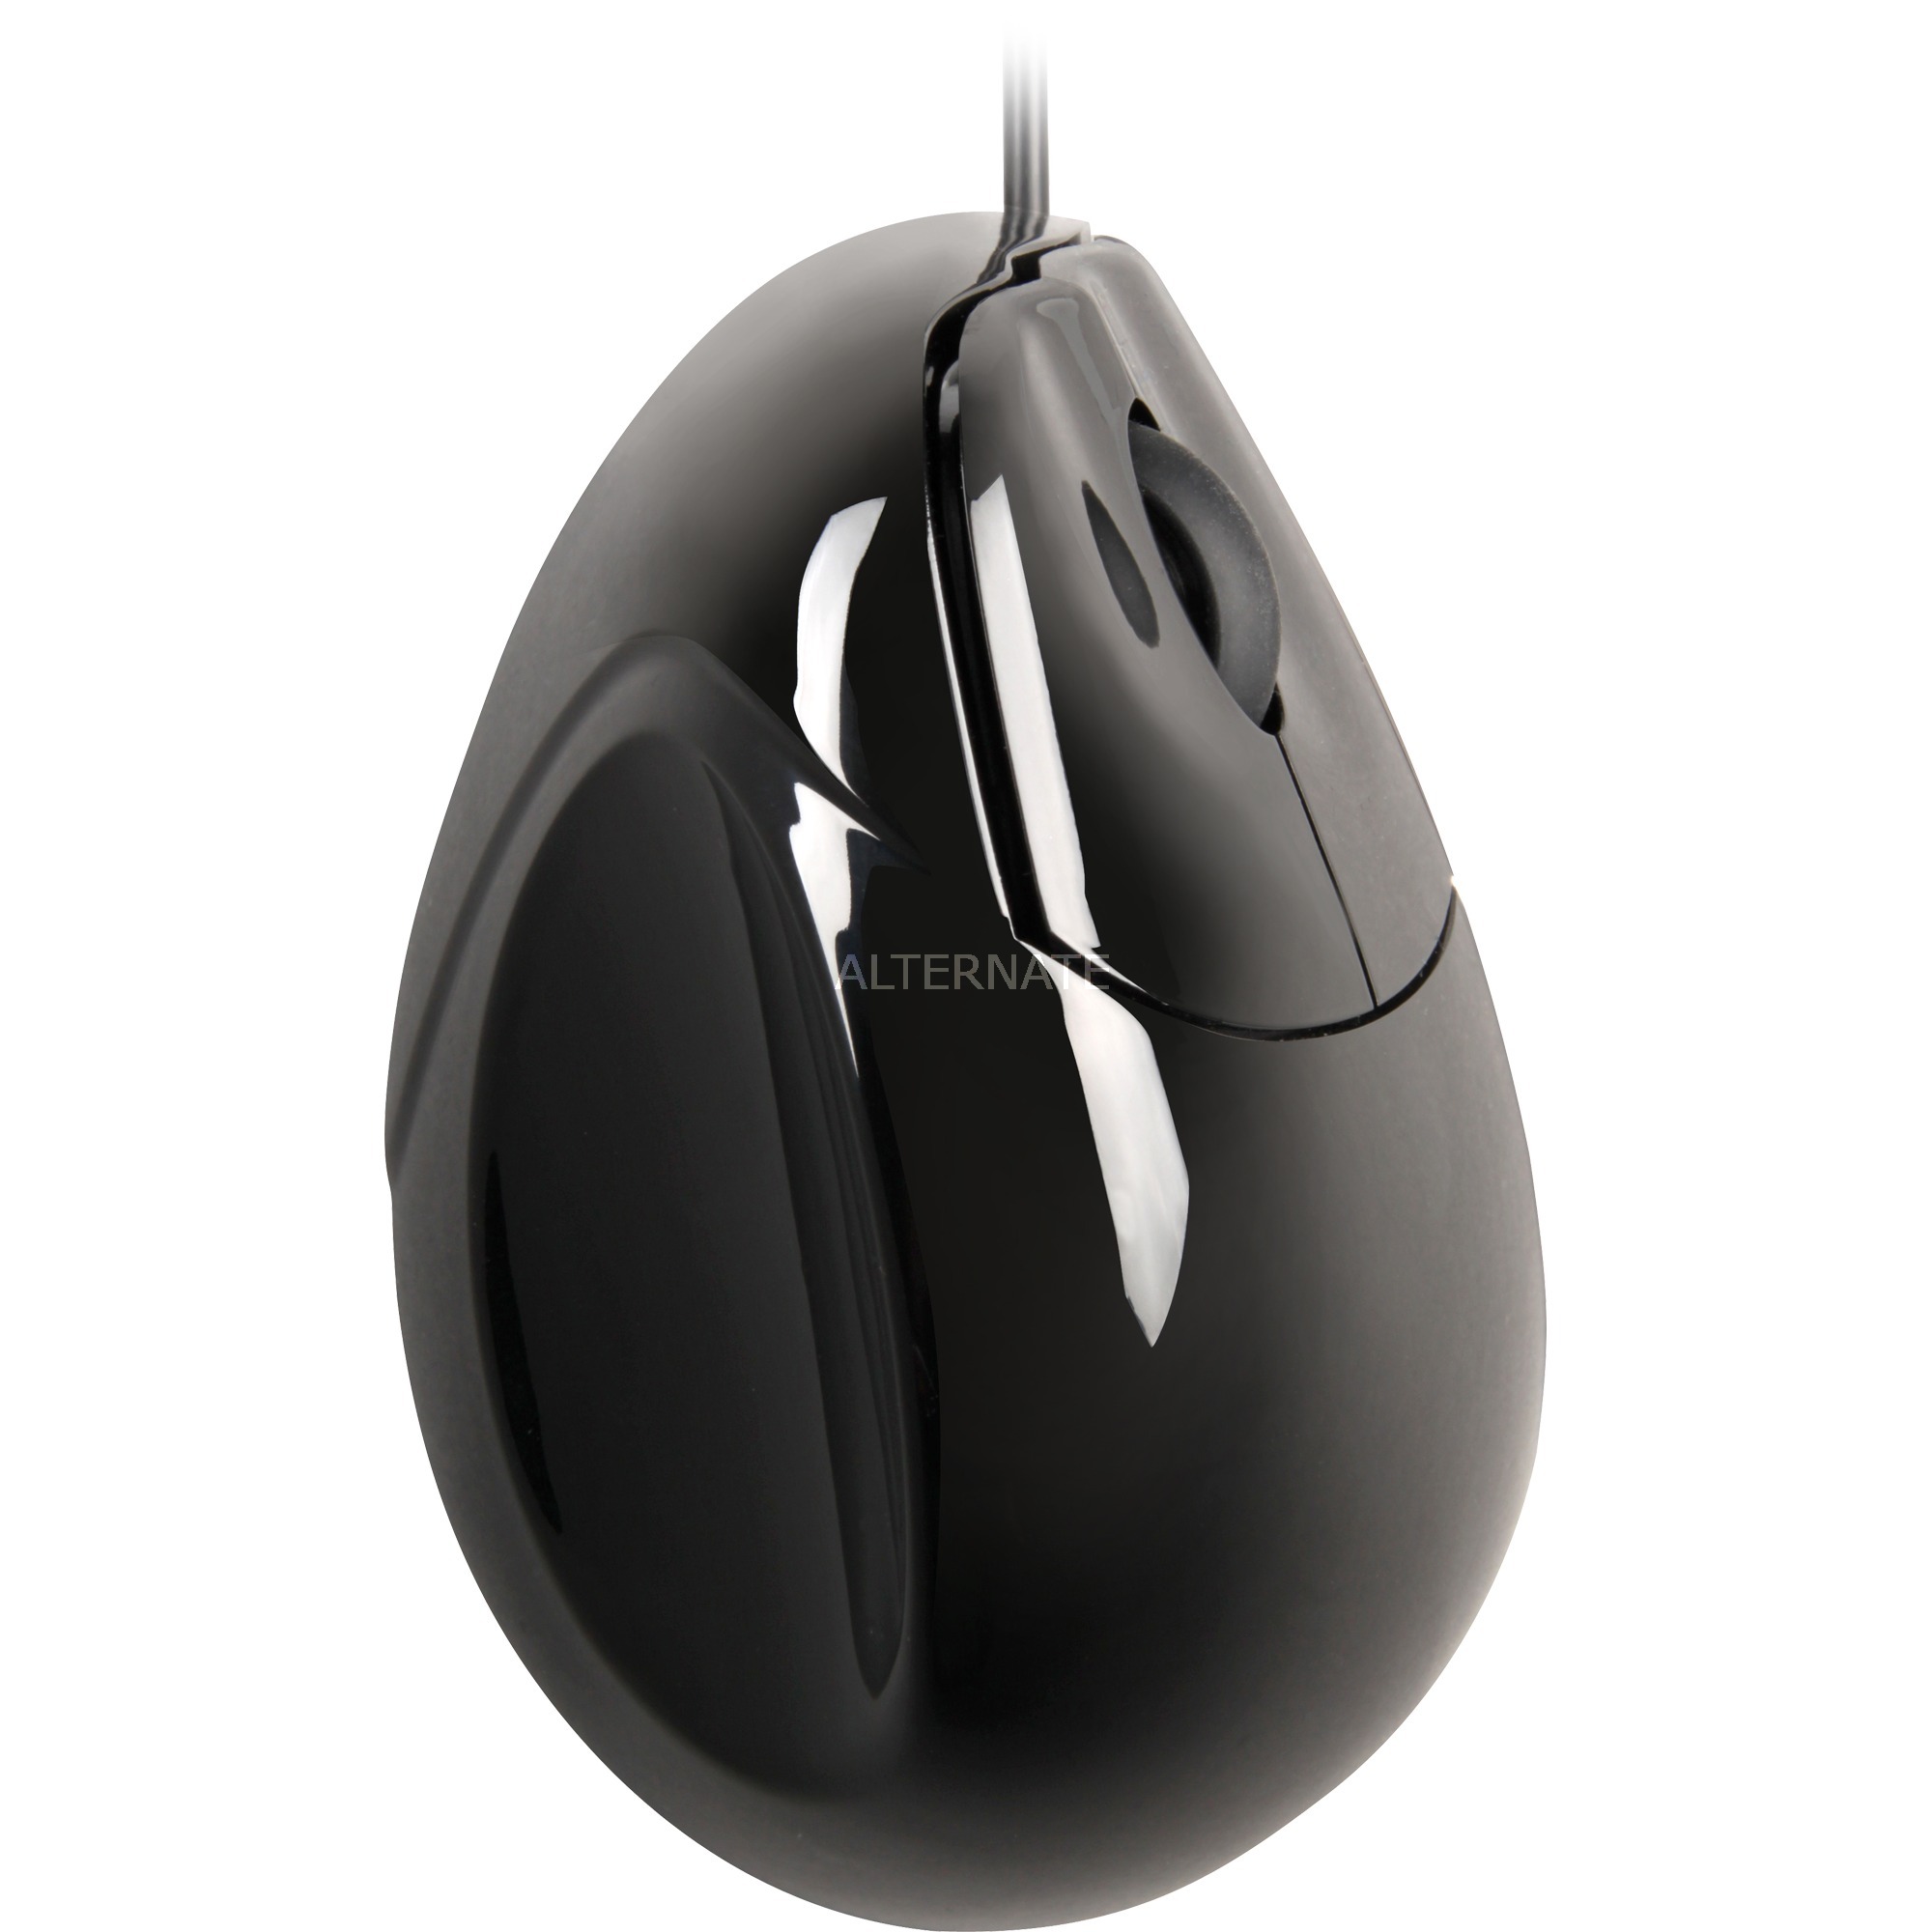 Image of Alternate - Vertical Mouse Standard RH, Maus online einkaufen bei Alternate